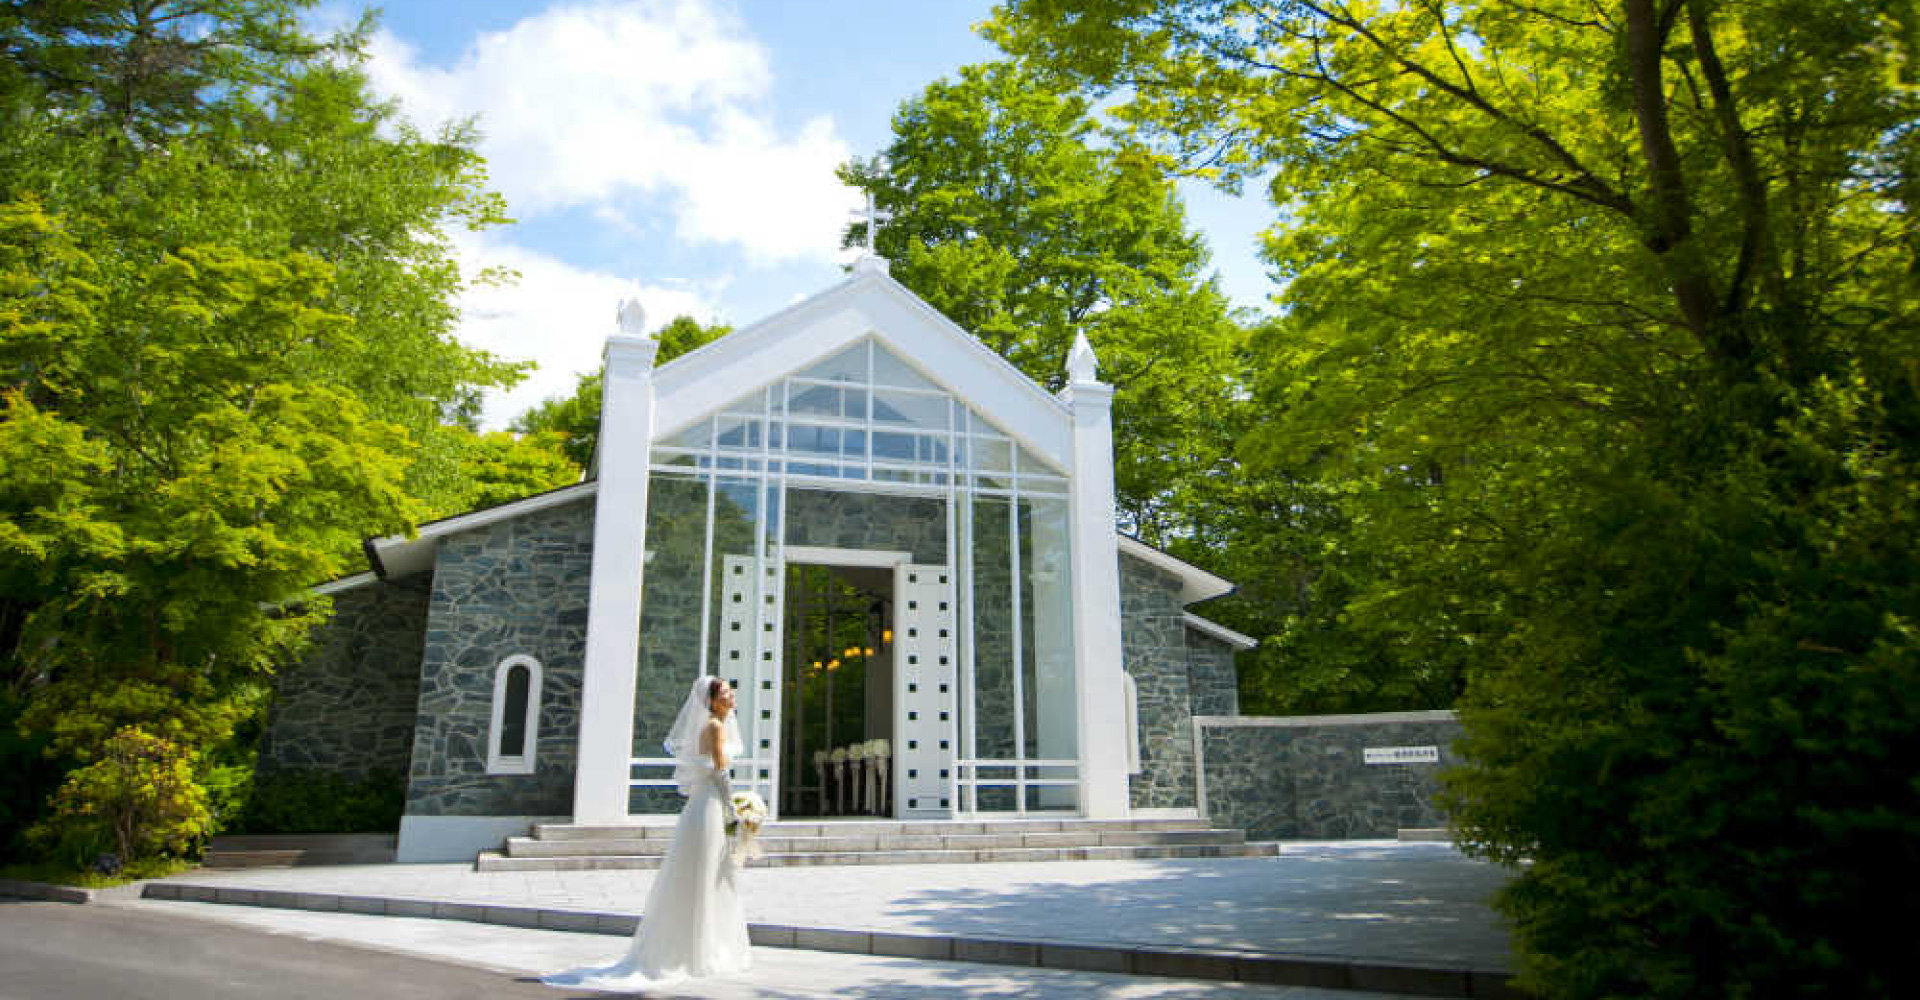 軽井沢でのリゾート挙式・結婚式・ウェディング・ブライダルの結婚式場選びなら「ブライダル図書館　軽井沢店」まで！軽井沢で素敵なウェディングを。